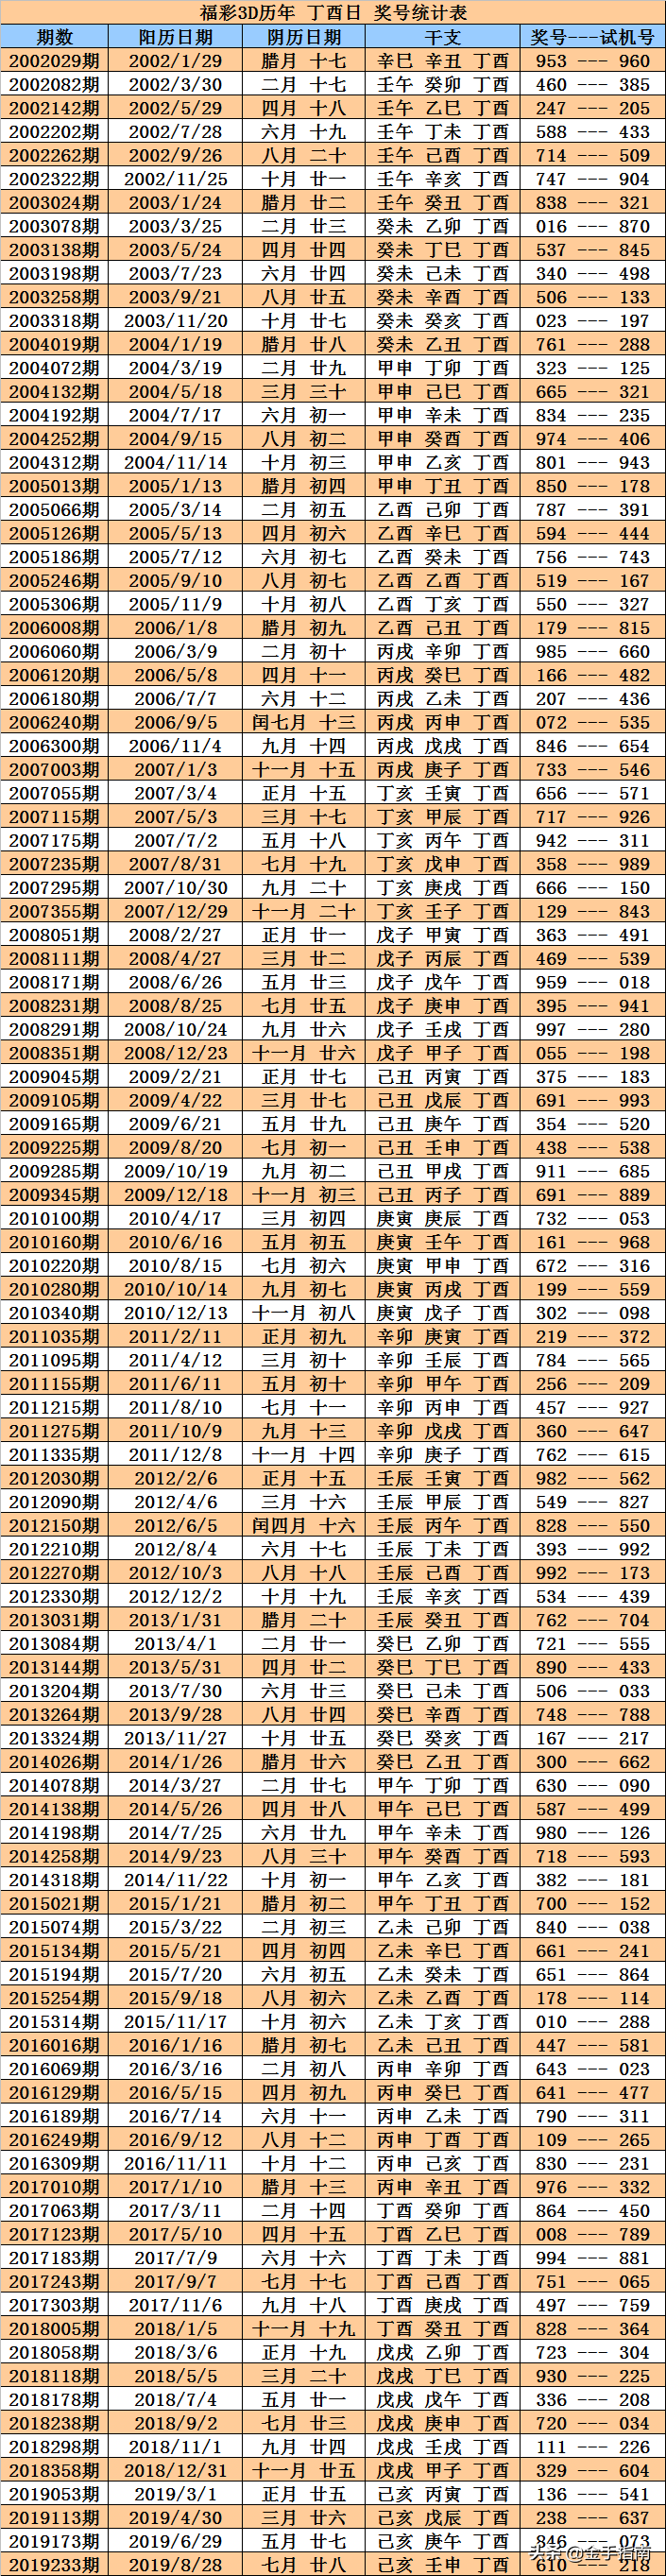 福彩3D第2019286期奖号：同期、阳历、阴历、周期、干支数据统计